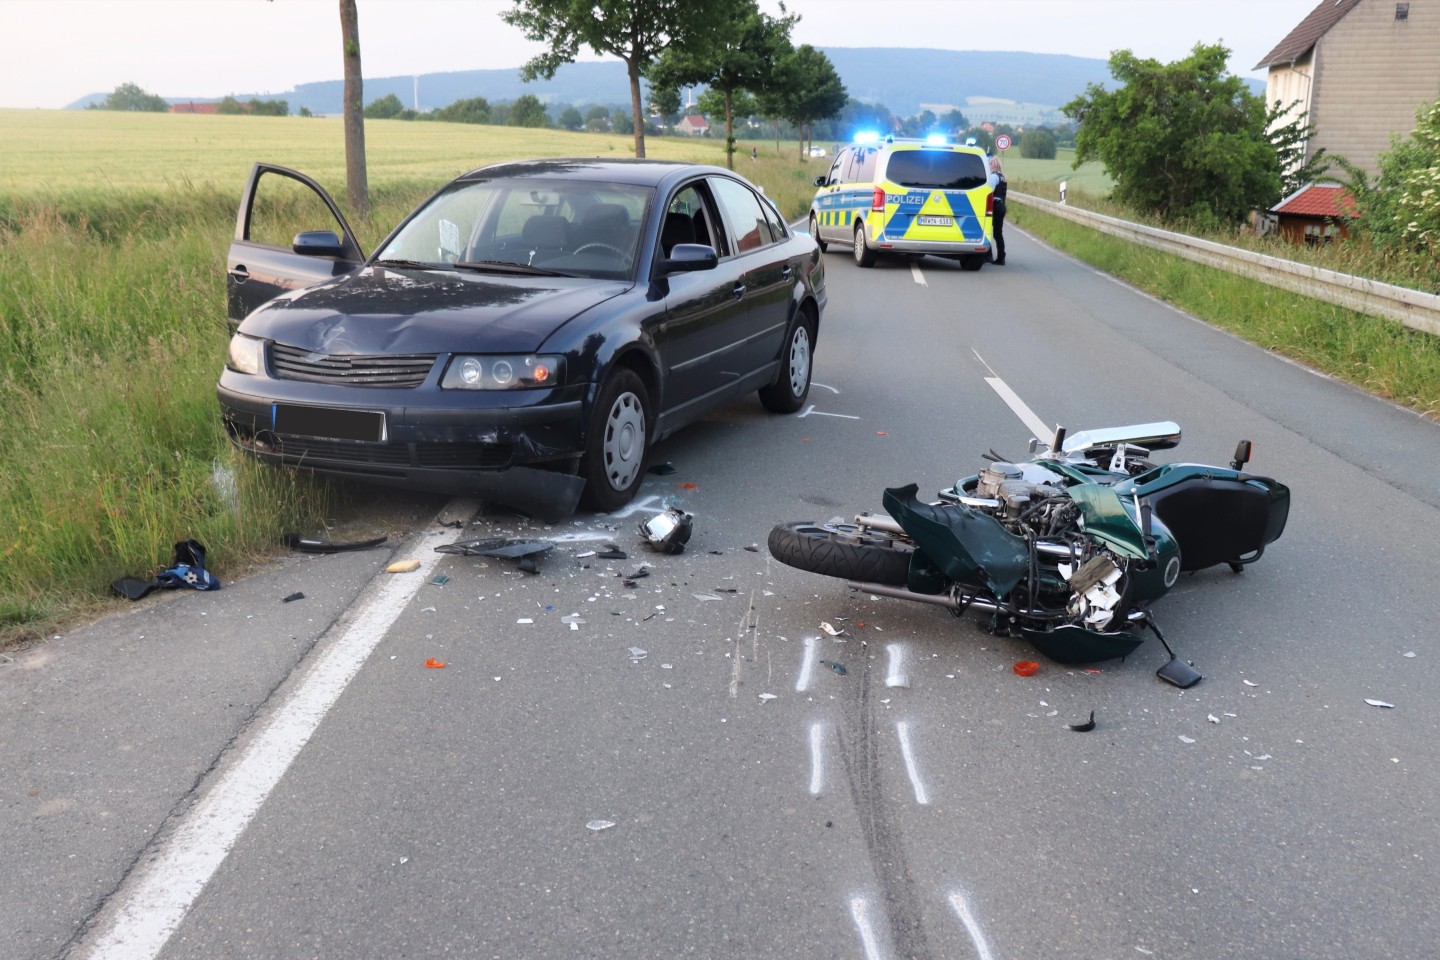 POL-HX: Motorradfahrer nach Frontalzusammenstoß schwer verletzt